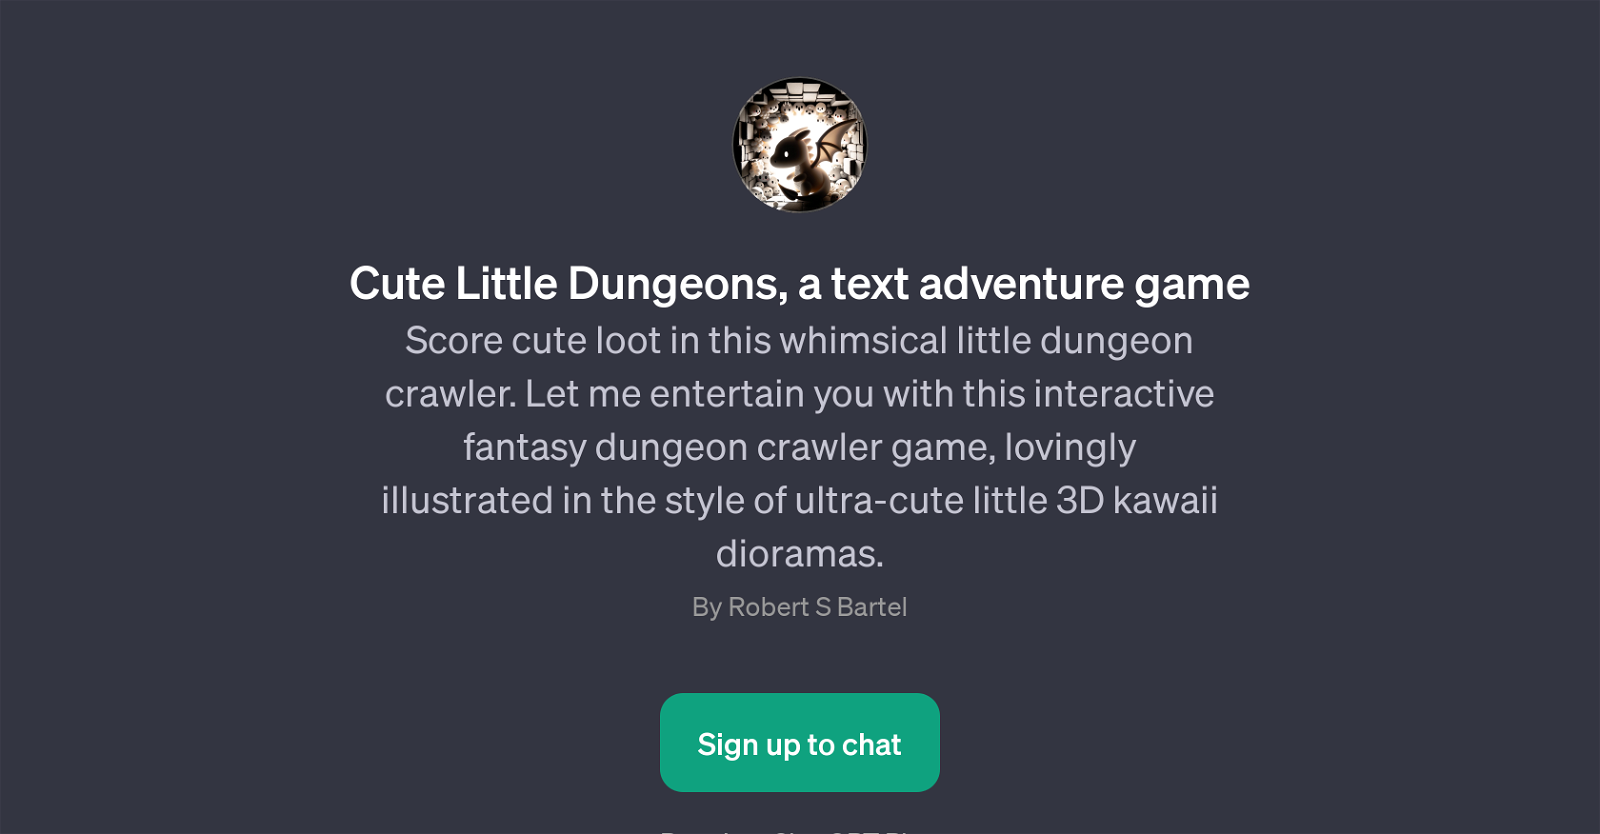 Cute Little Dungeons website